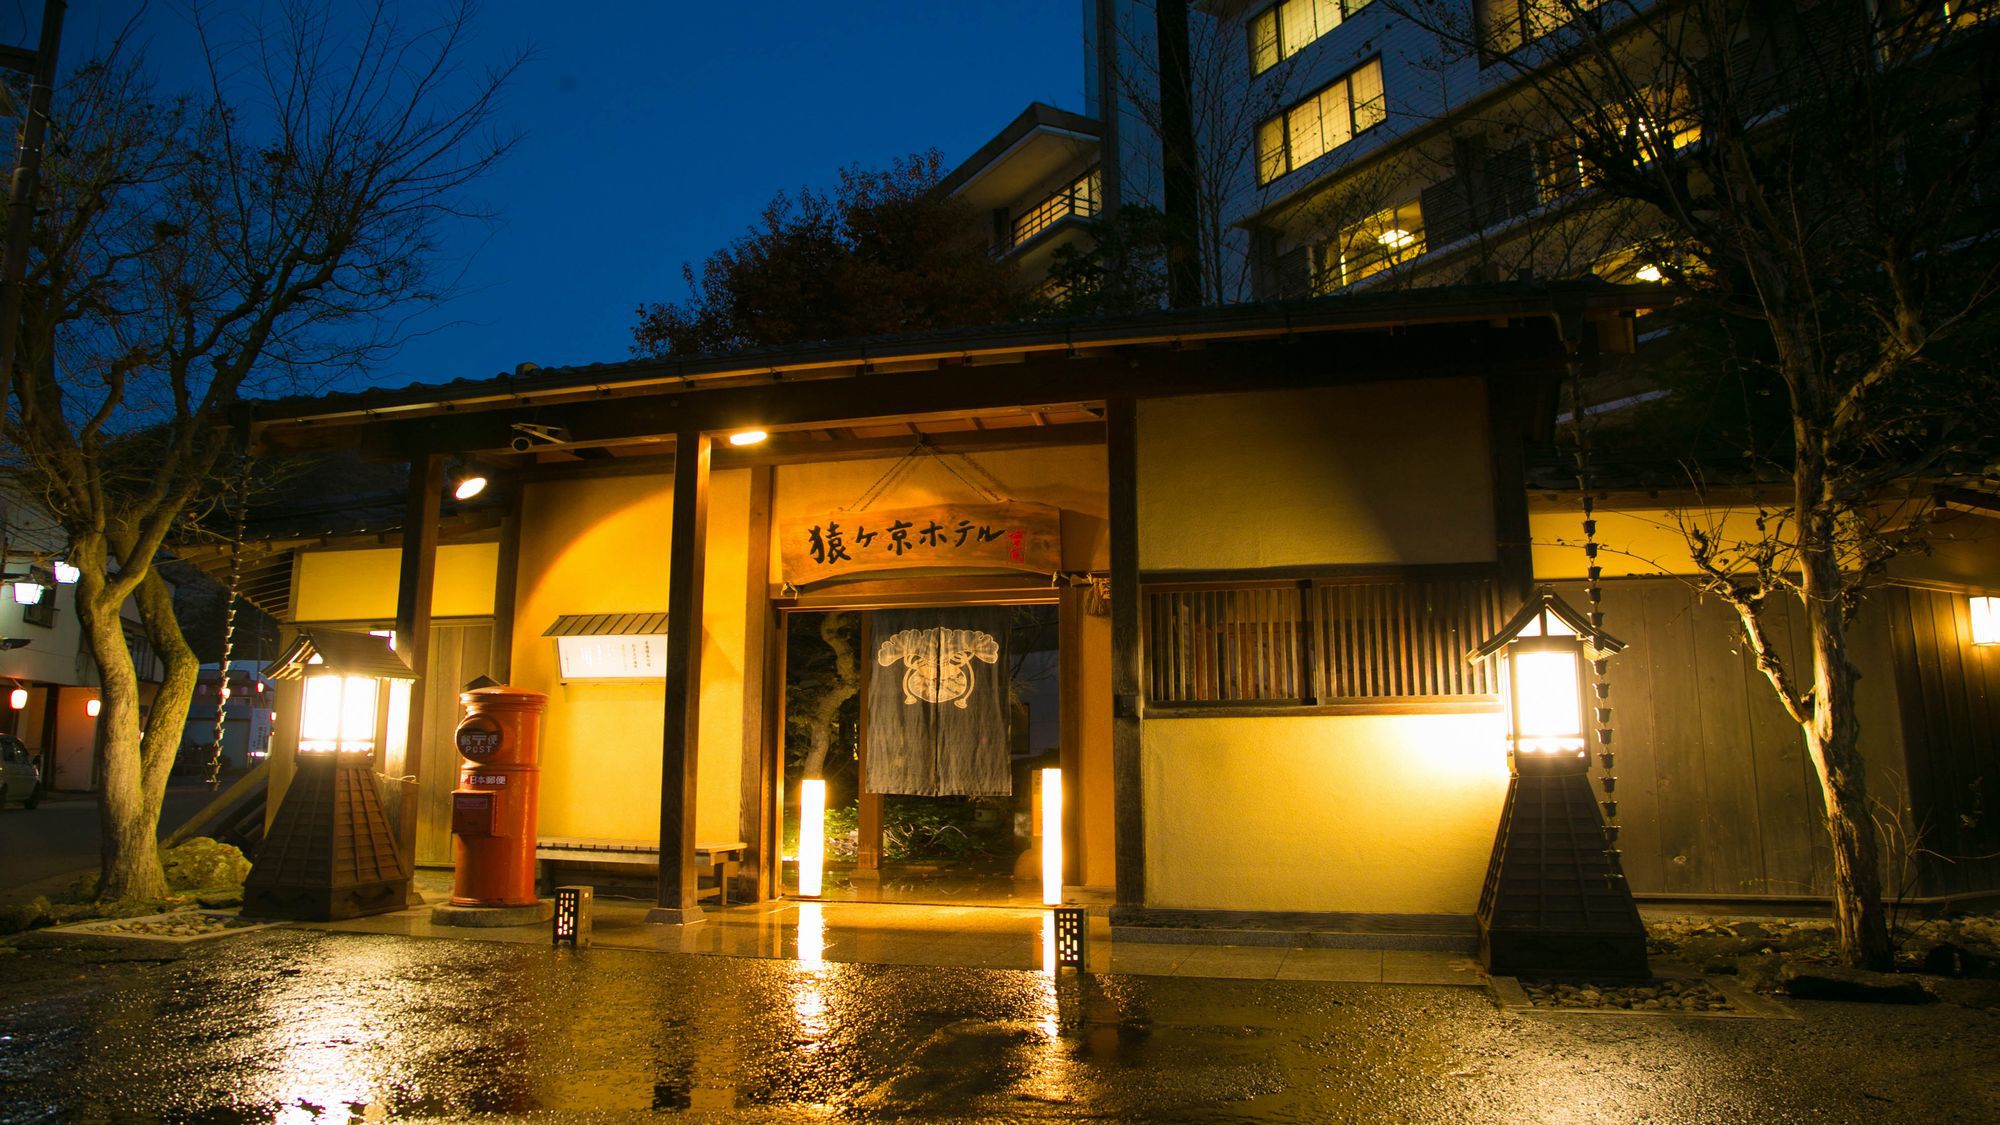 相俣ダム観光に便利な猿ヶ京温泉内の宿